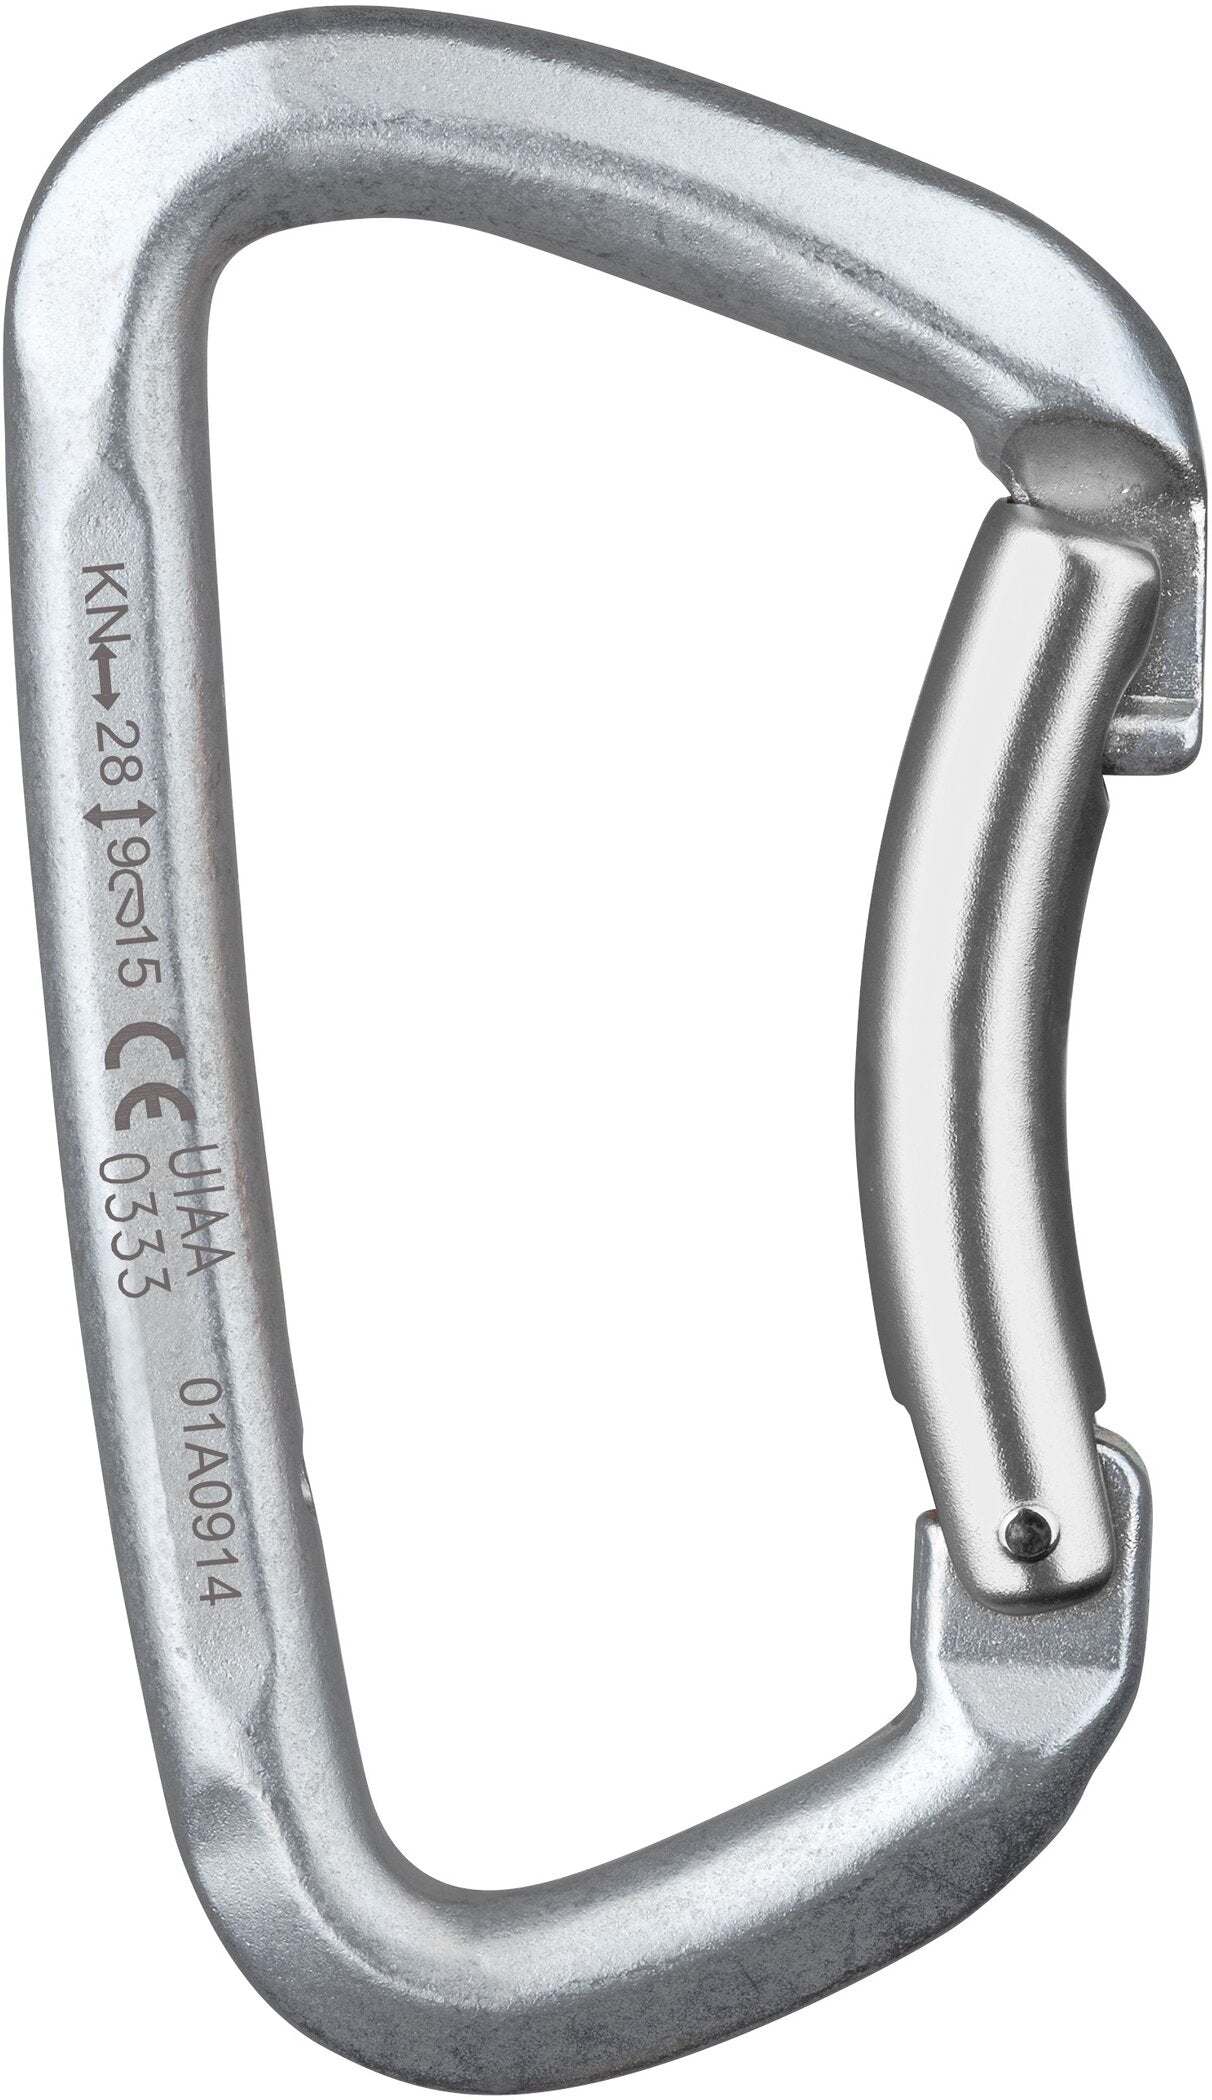 Unisex Hot Steel Bent Carabiner